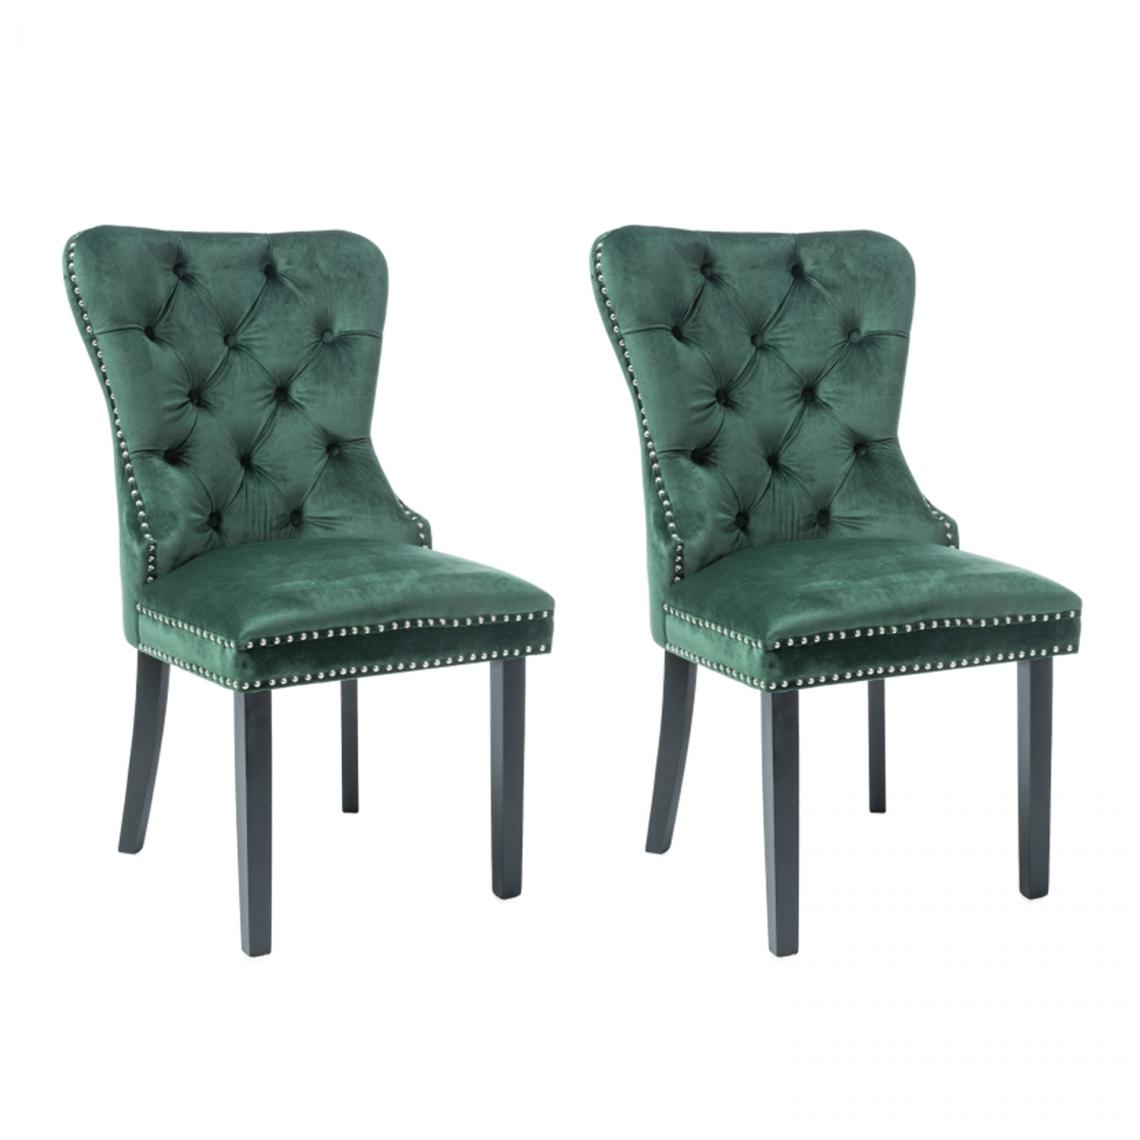 Hucoco - AMANDI - Lot de 2 chaises en tissu velouté -98x56x45 cm - Structure en bois - Style glamour - Vert - Chaises